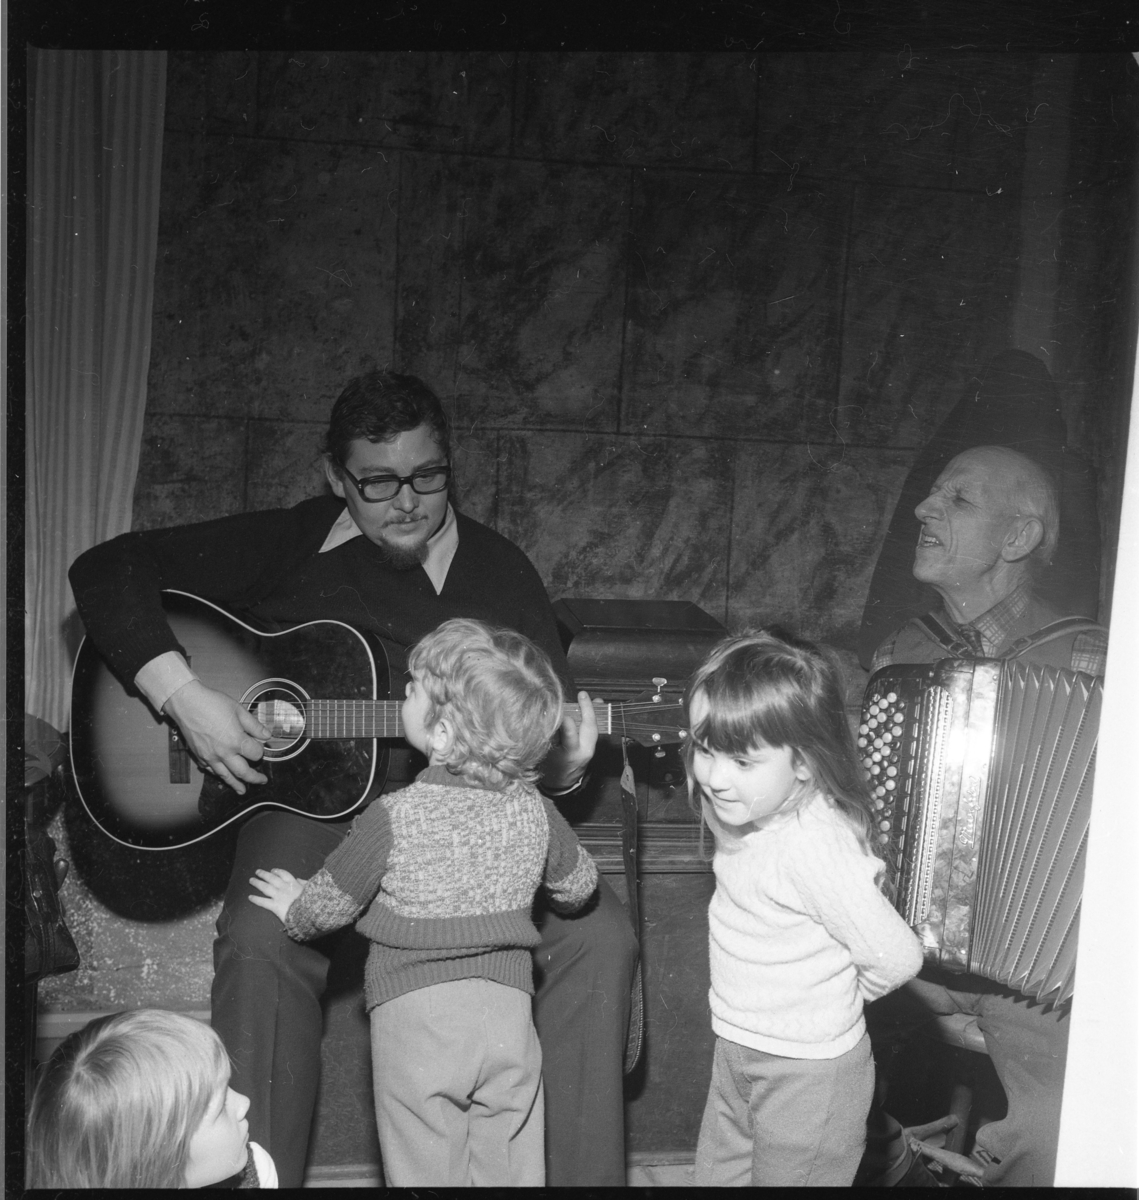 Barn står framför två män som spelar gitarr respektive dragspel. Det är Ölmstad hembygdsförenings julfest.